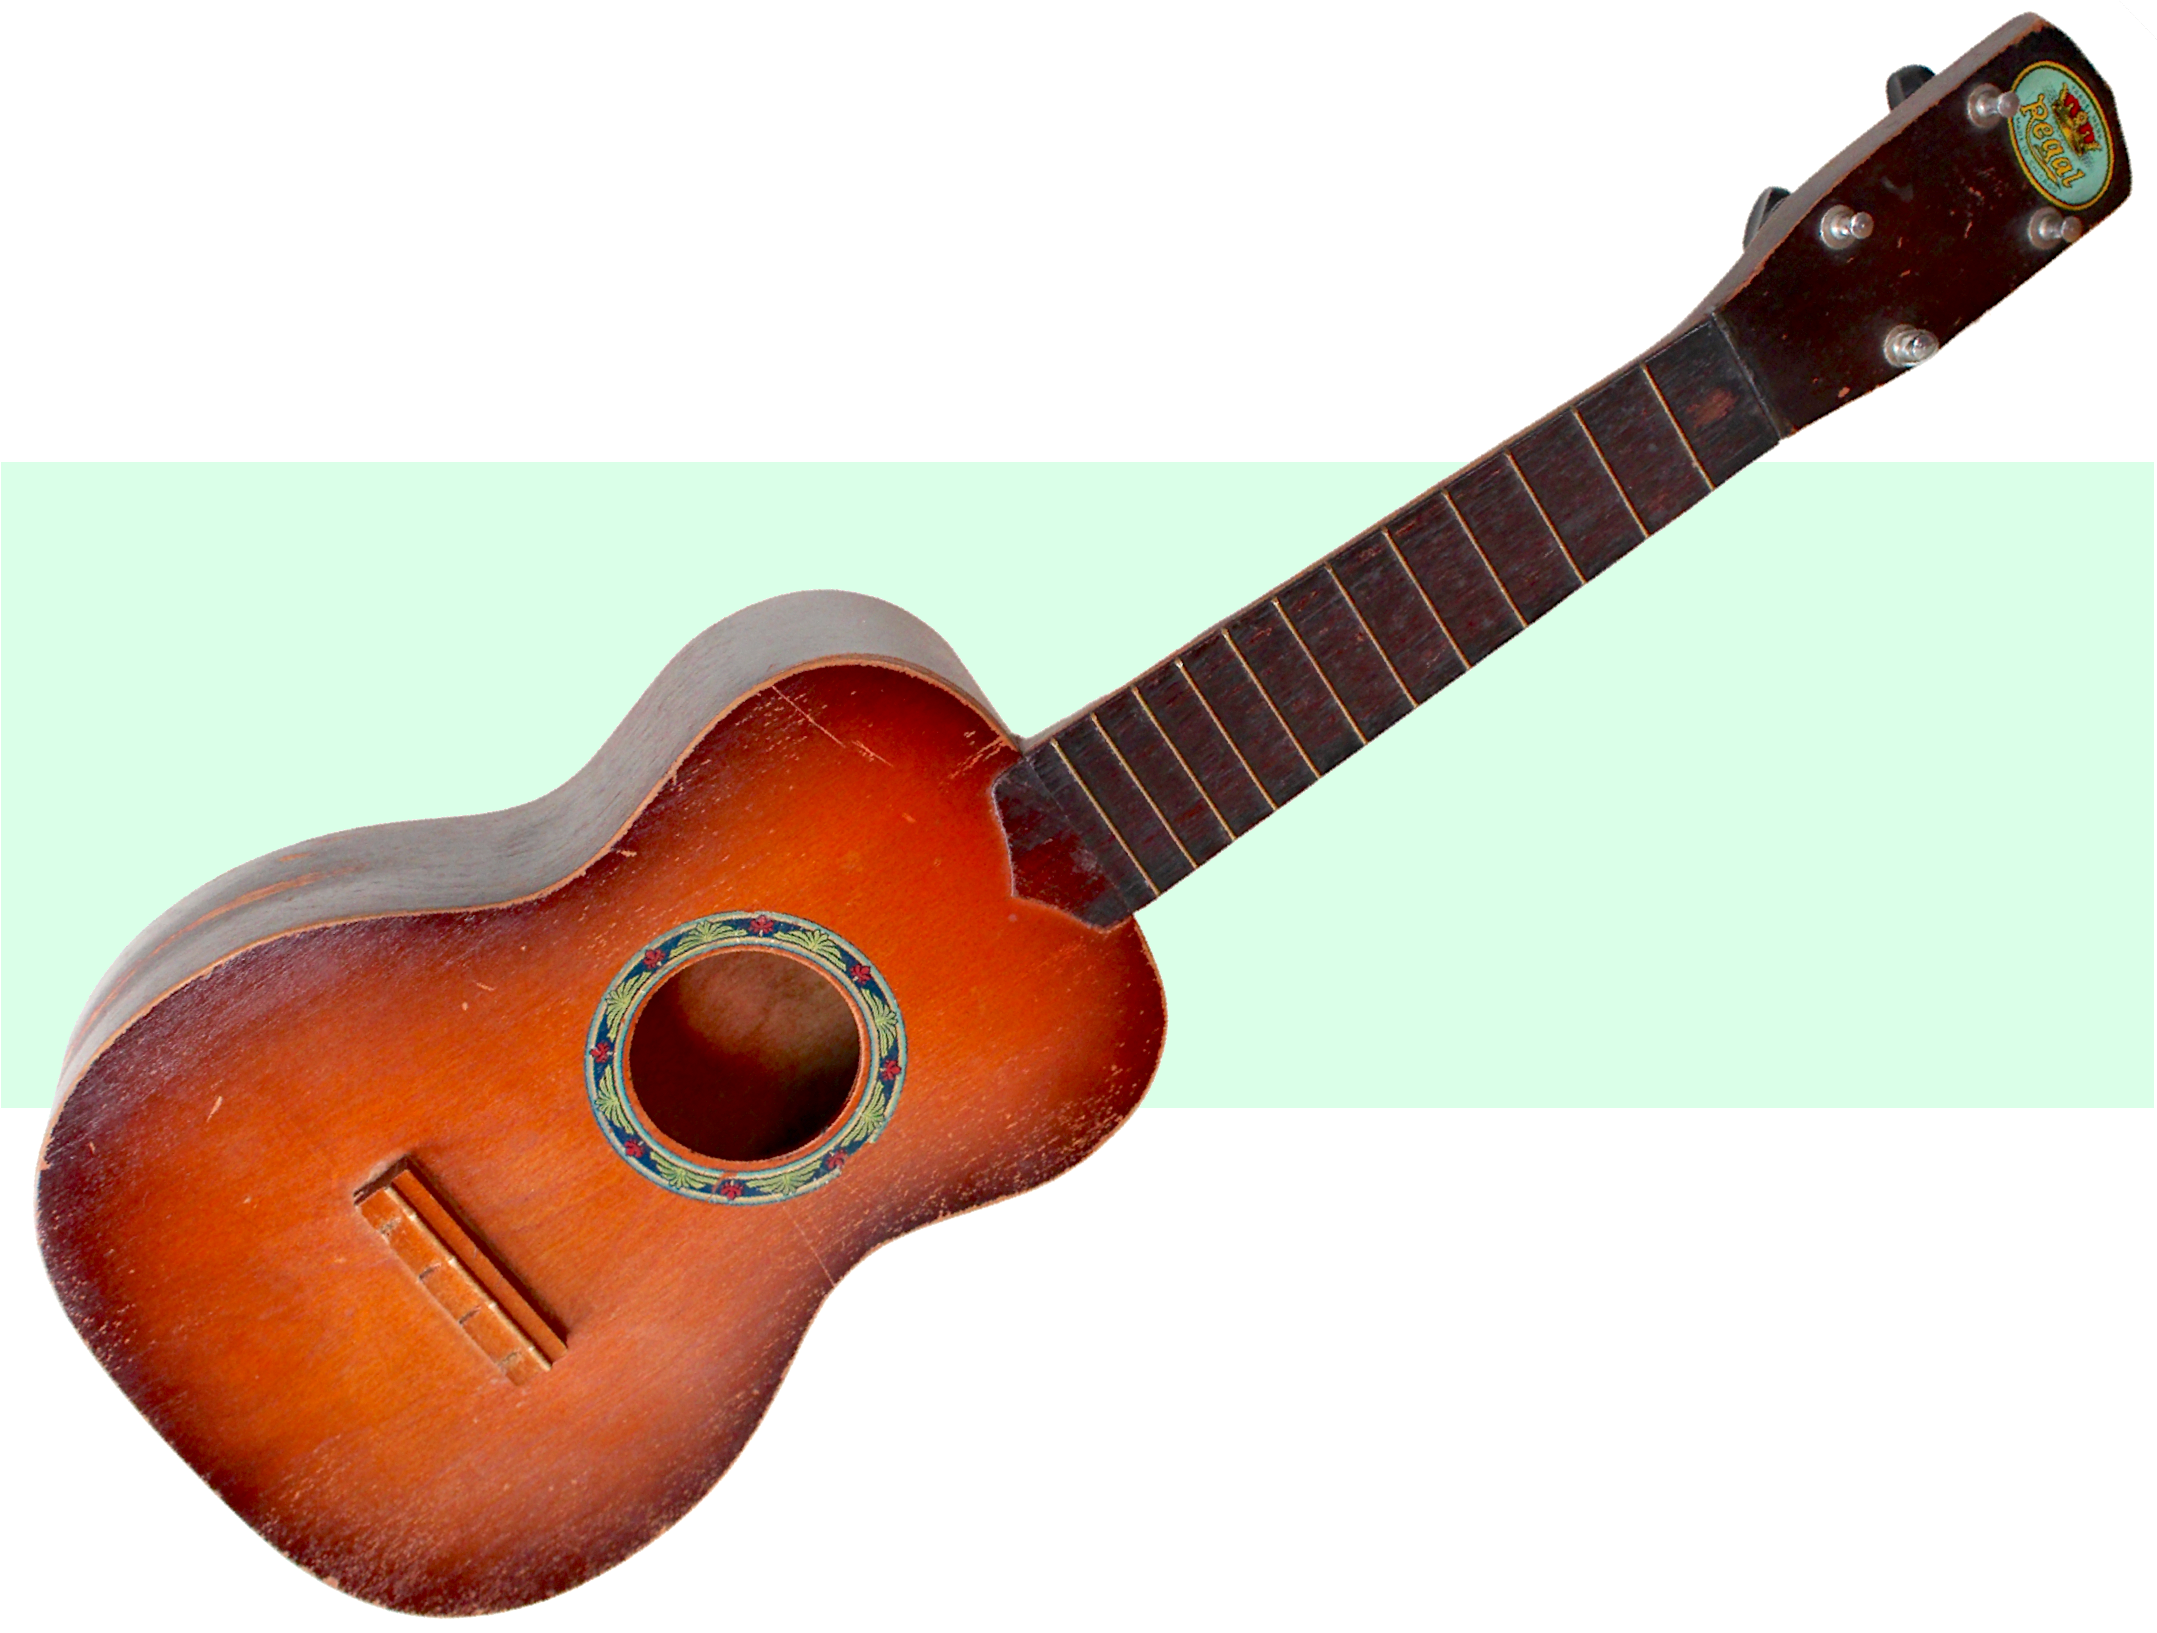 Regal Musical Instrument Co., est. 1908